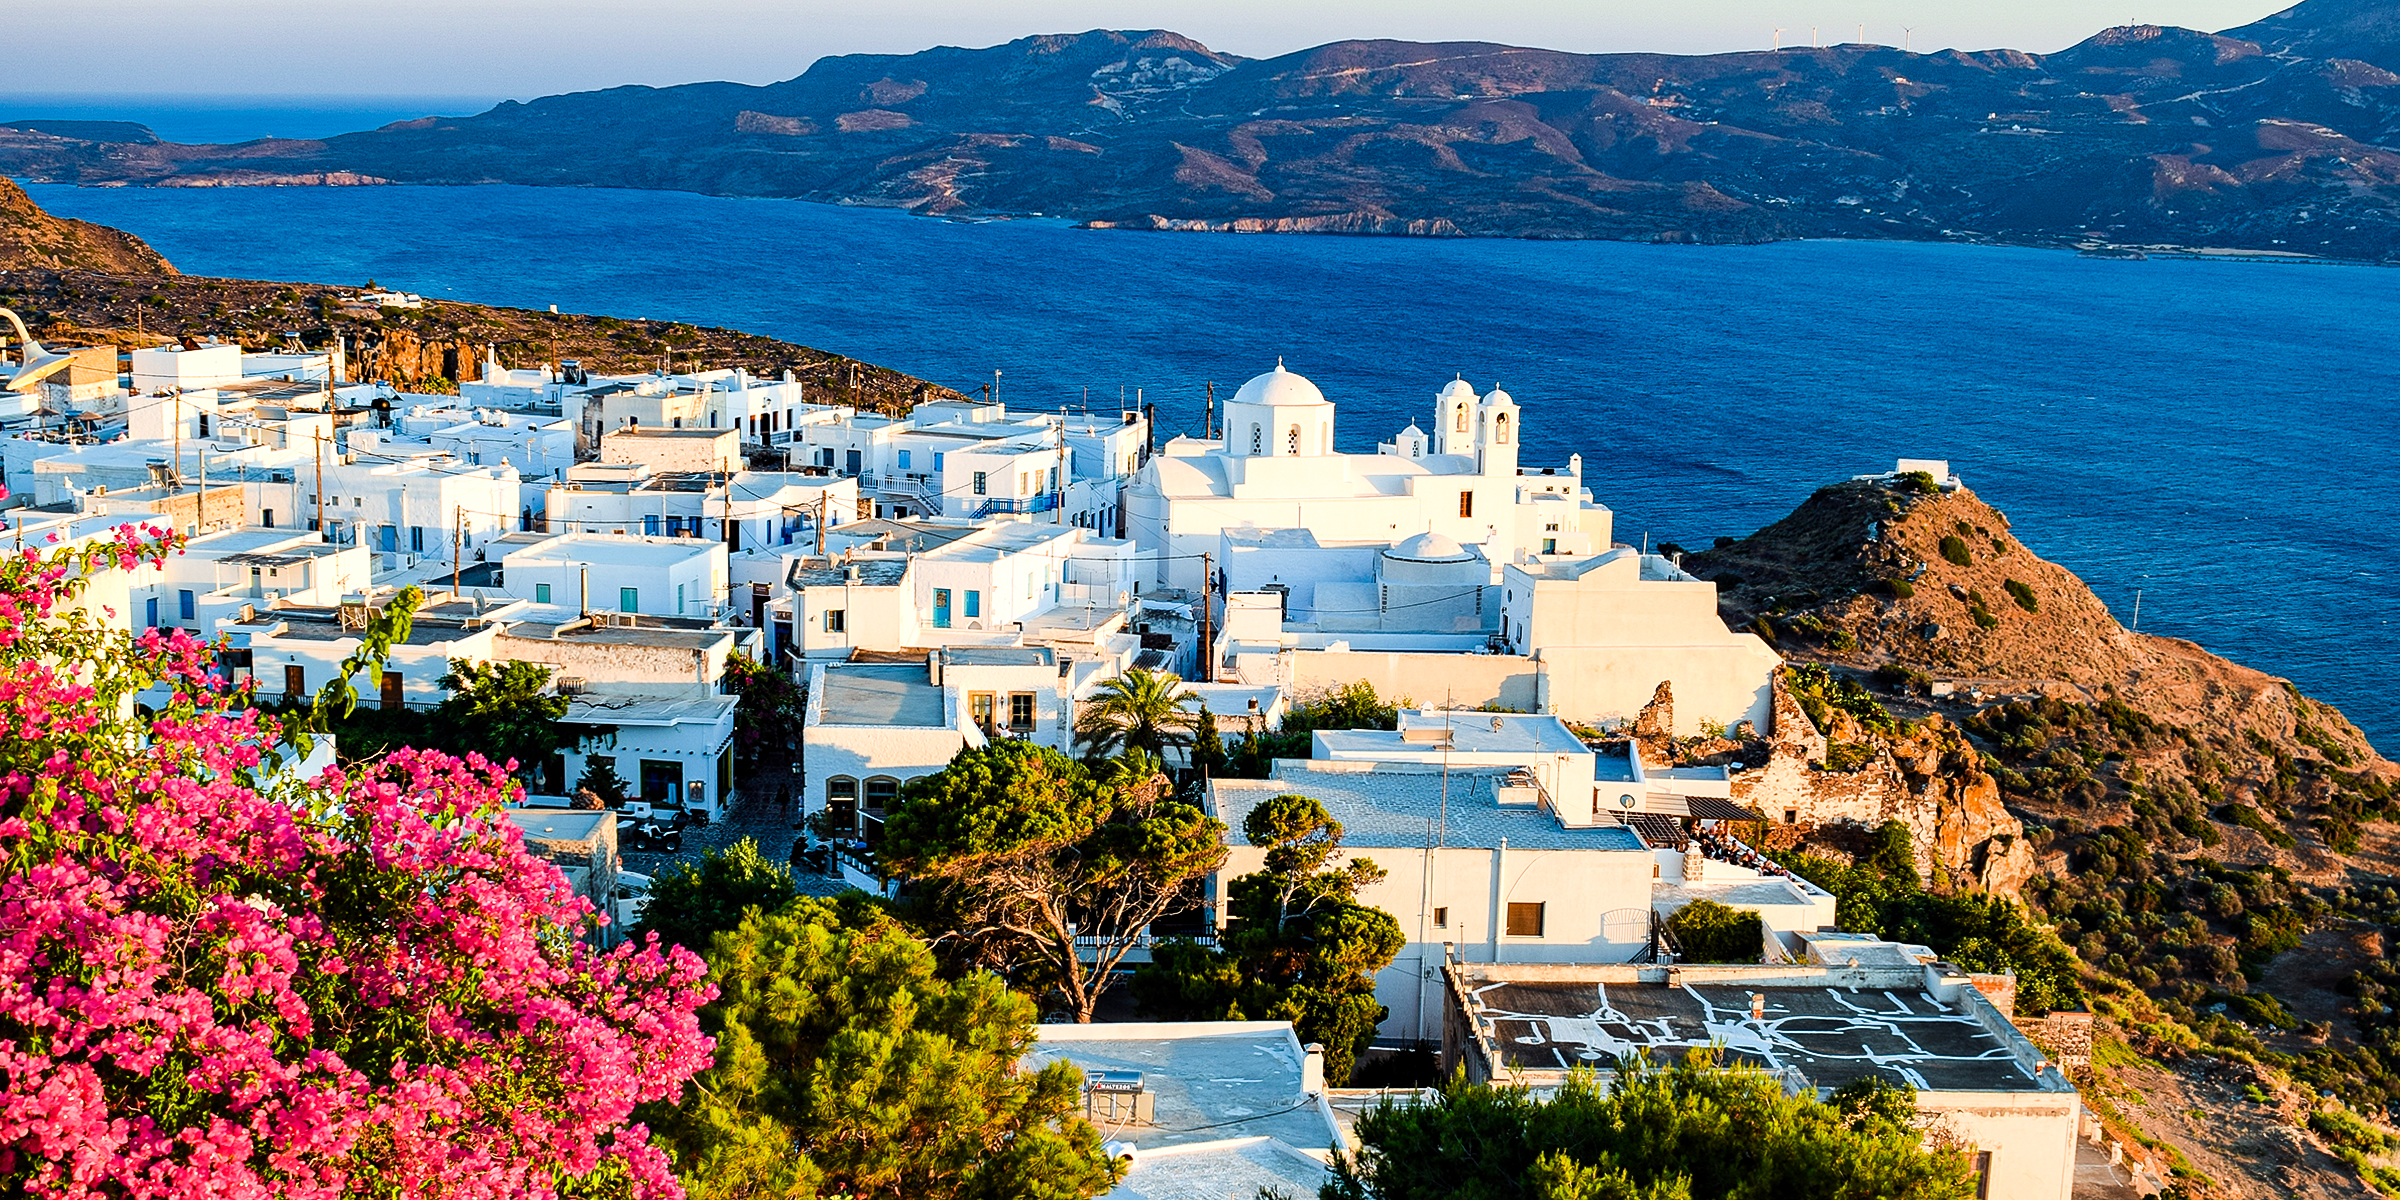 Seaside scenery of Plaka in Milos, Greece | Source: Pexels